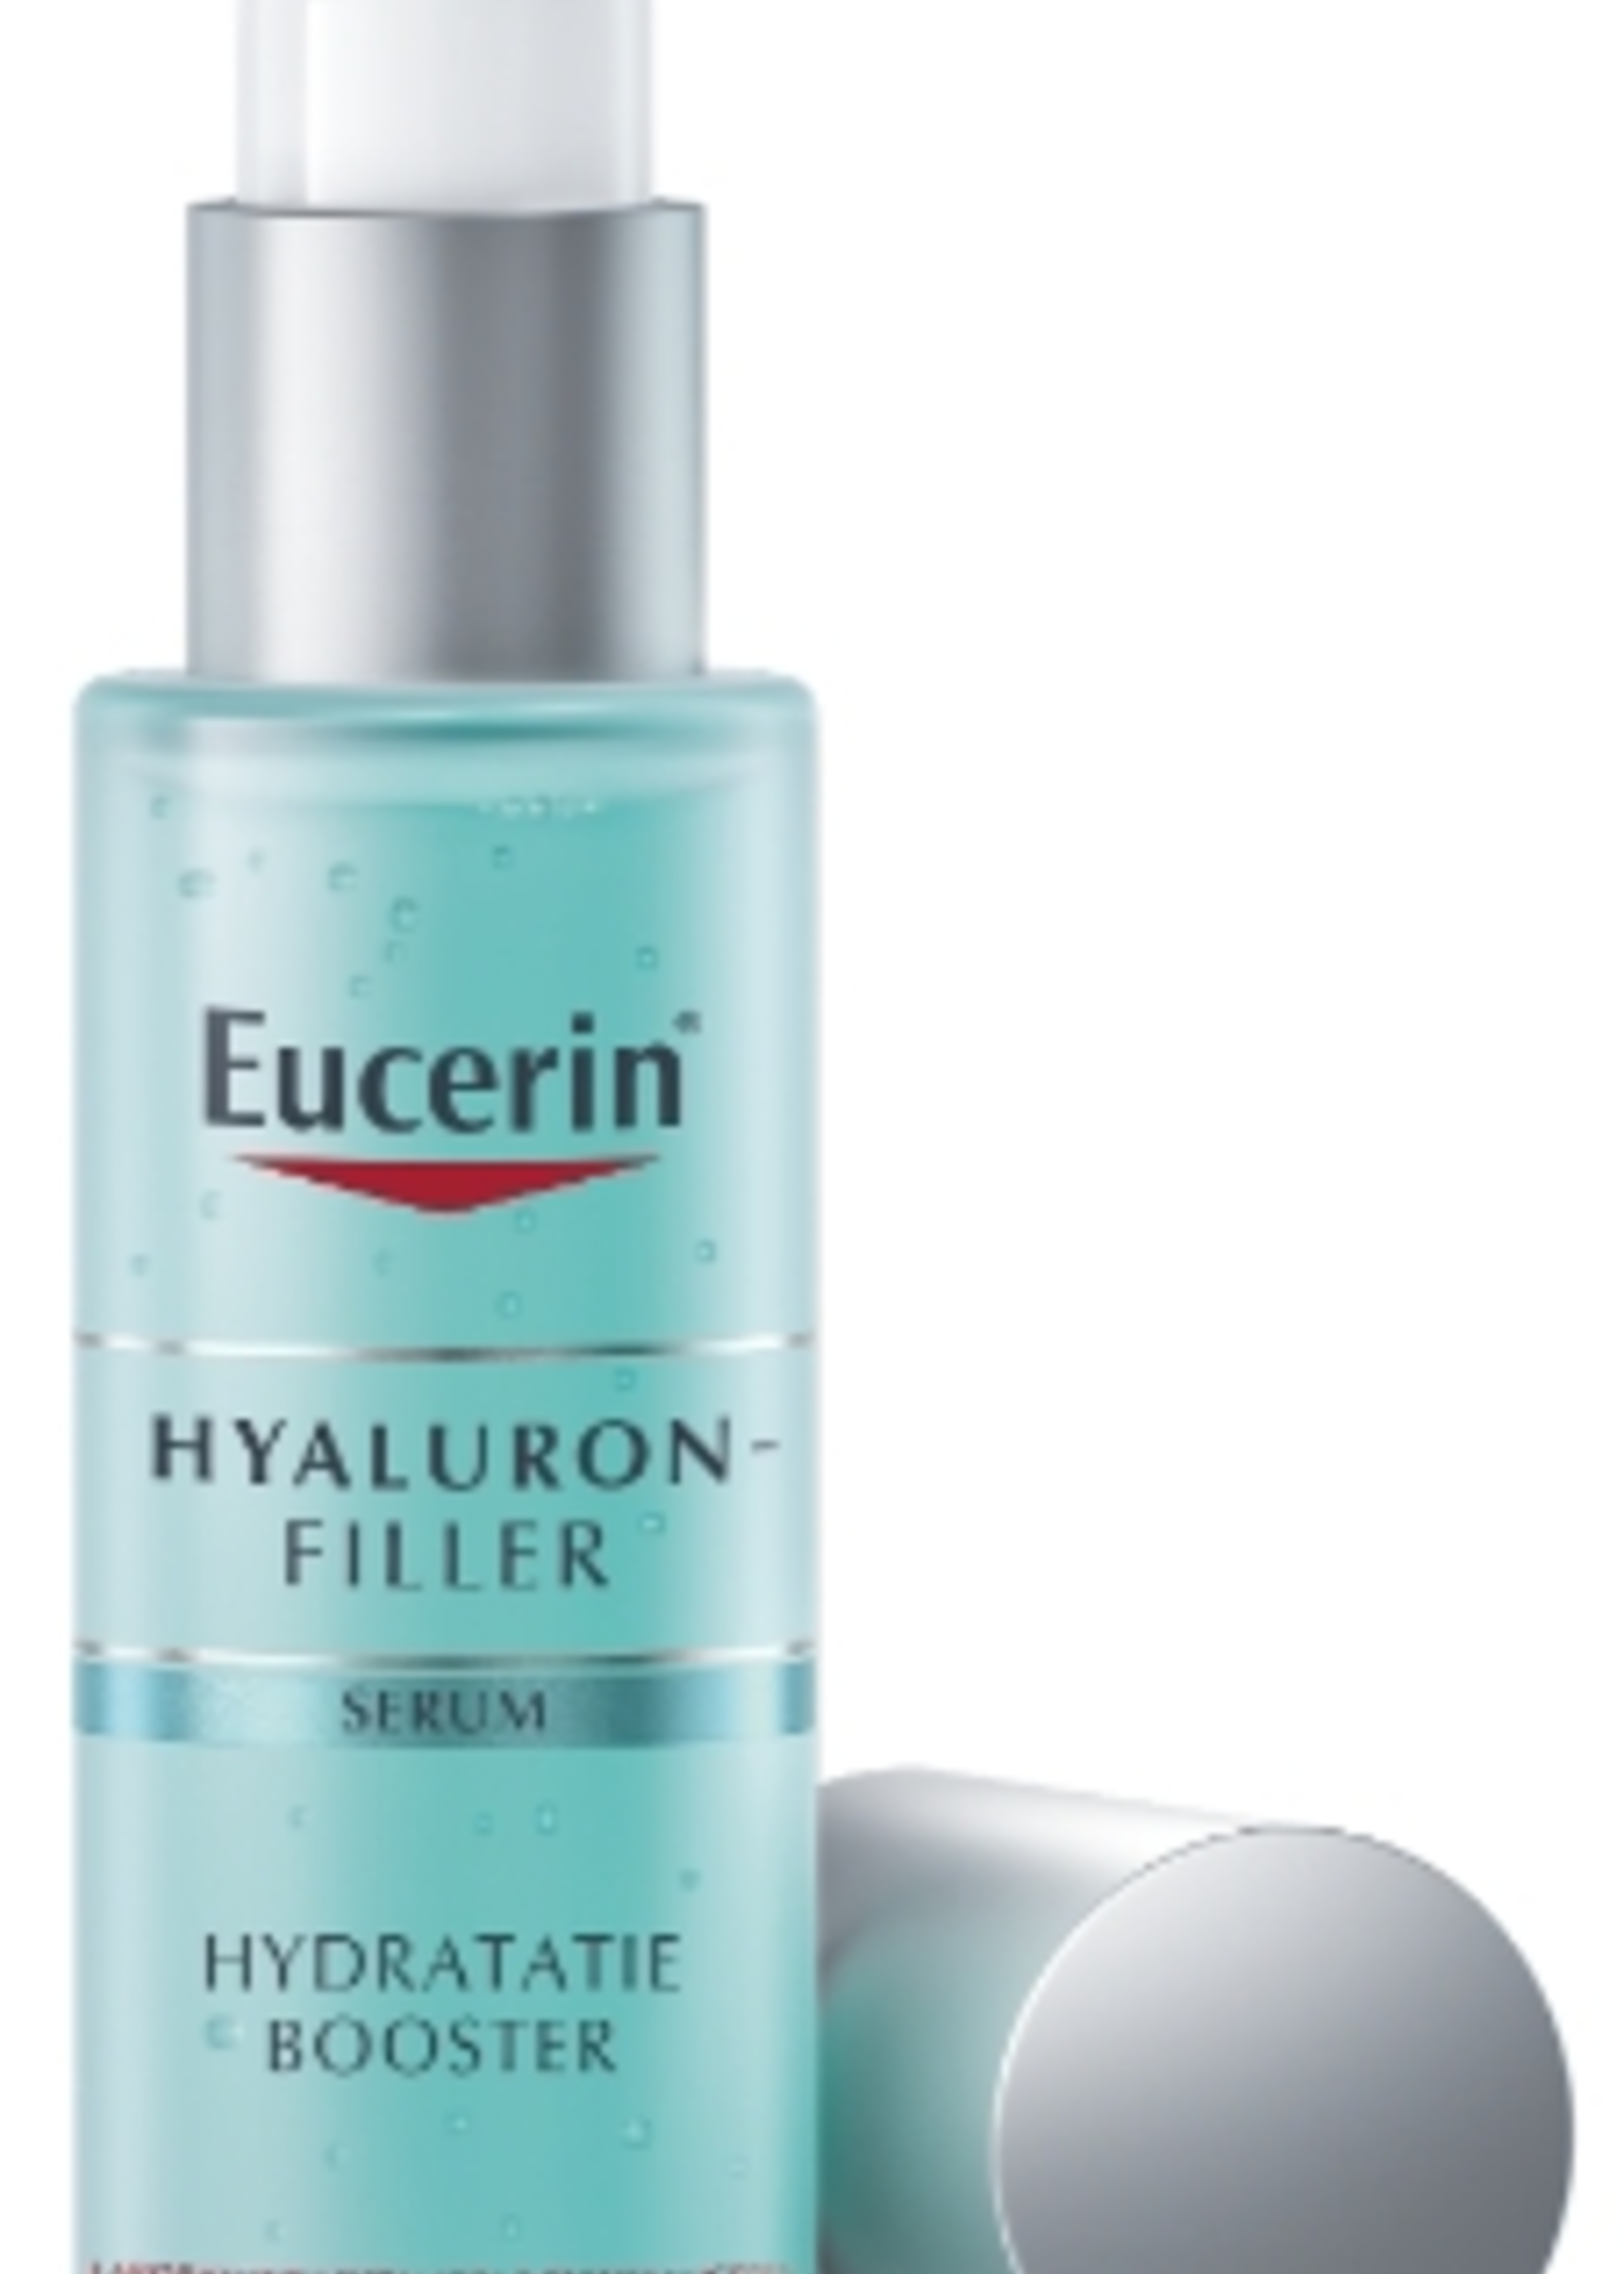 Eucerin Hyaluron-Filler Hydratatie Booster 30ml